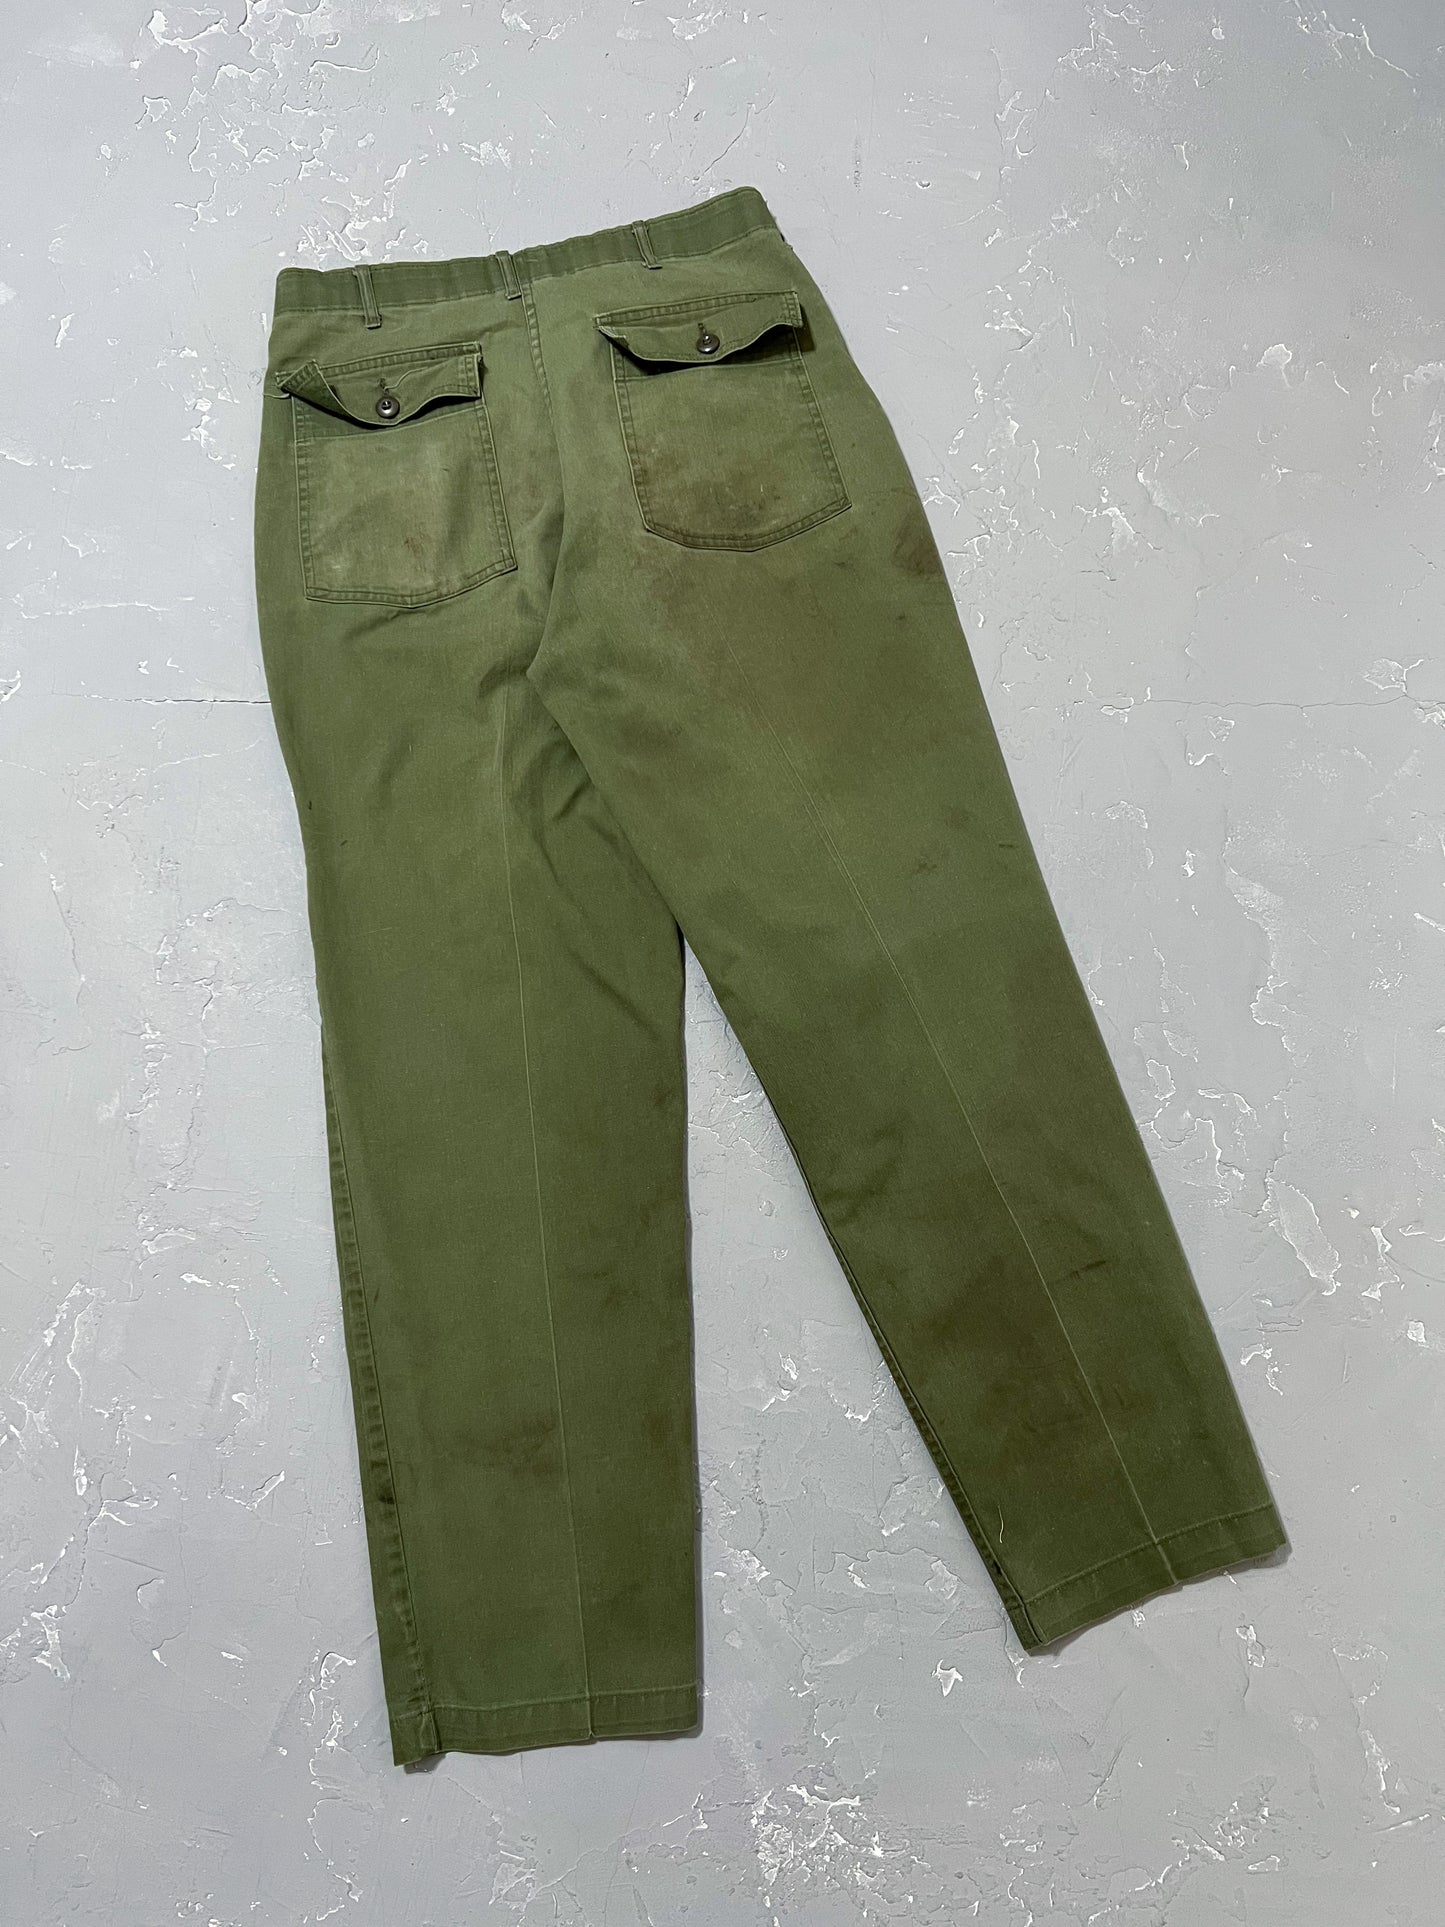 1980s OG-507 Fatigue Pants [34 x 32]